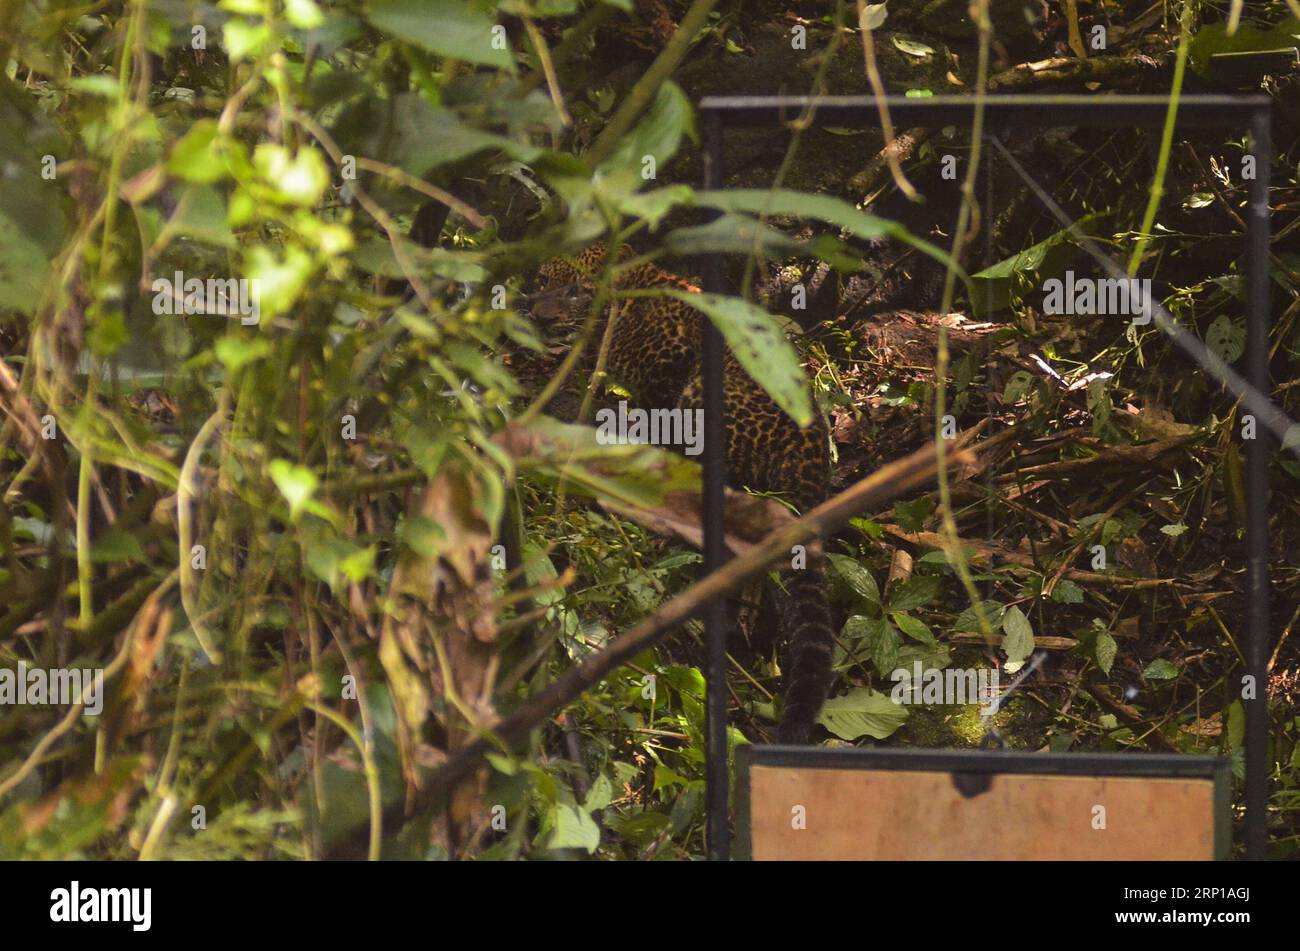 (180621) -- BANDUNG, le 21 juin 2018 -- Un léopard mâle (panthera pardus melas) retourne dans son habitat naturel à Bandung, en Indonésie, le 21 juin 2018. Le léopard, sauvé par l'Agence de conservation des ressources naturelles après qu'il ait été piégé dans un village de Pengalengan, a été remis en liberté dans son habitat naturel jeudi. (hy) INDONÉSIE-BANDUNG-LEOPARD-RETOUR À LA NATURE Septianjar PUBLICATIONxNOTxINxCHN Banque D'Images